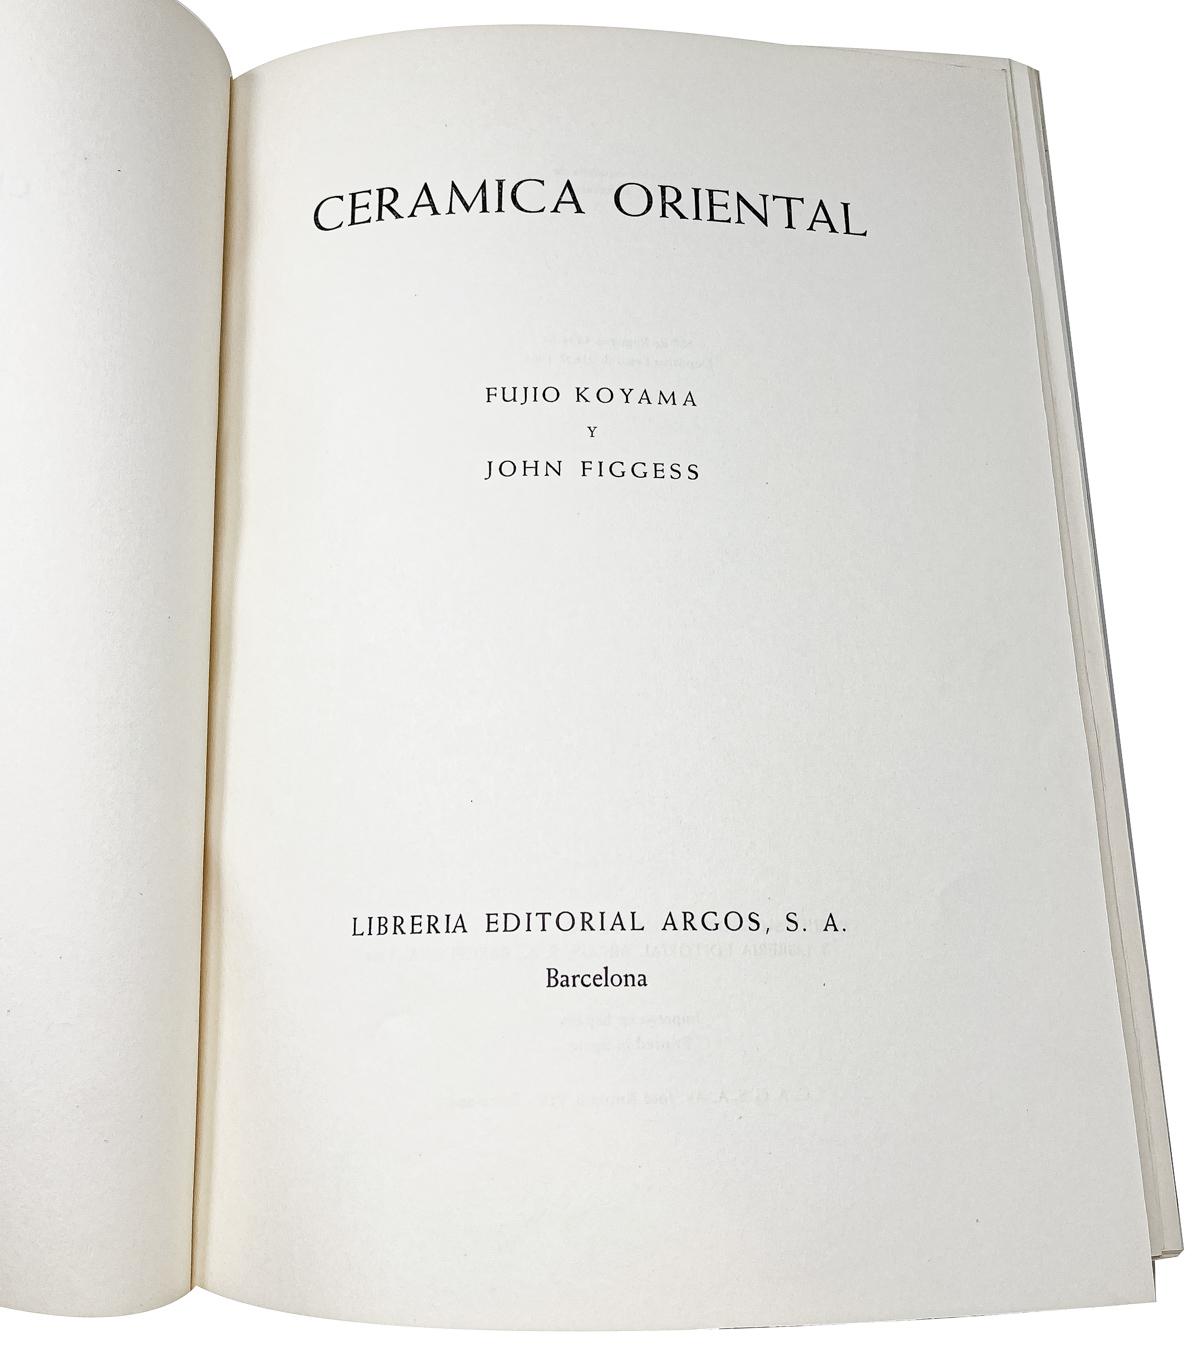 "CERÁMICA ORIENTAL"